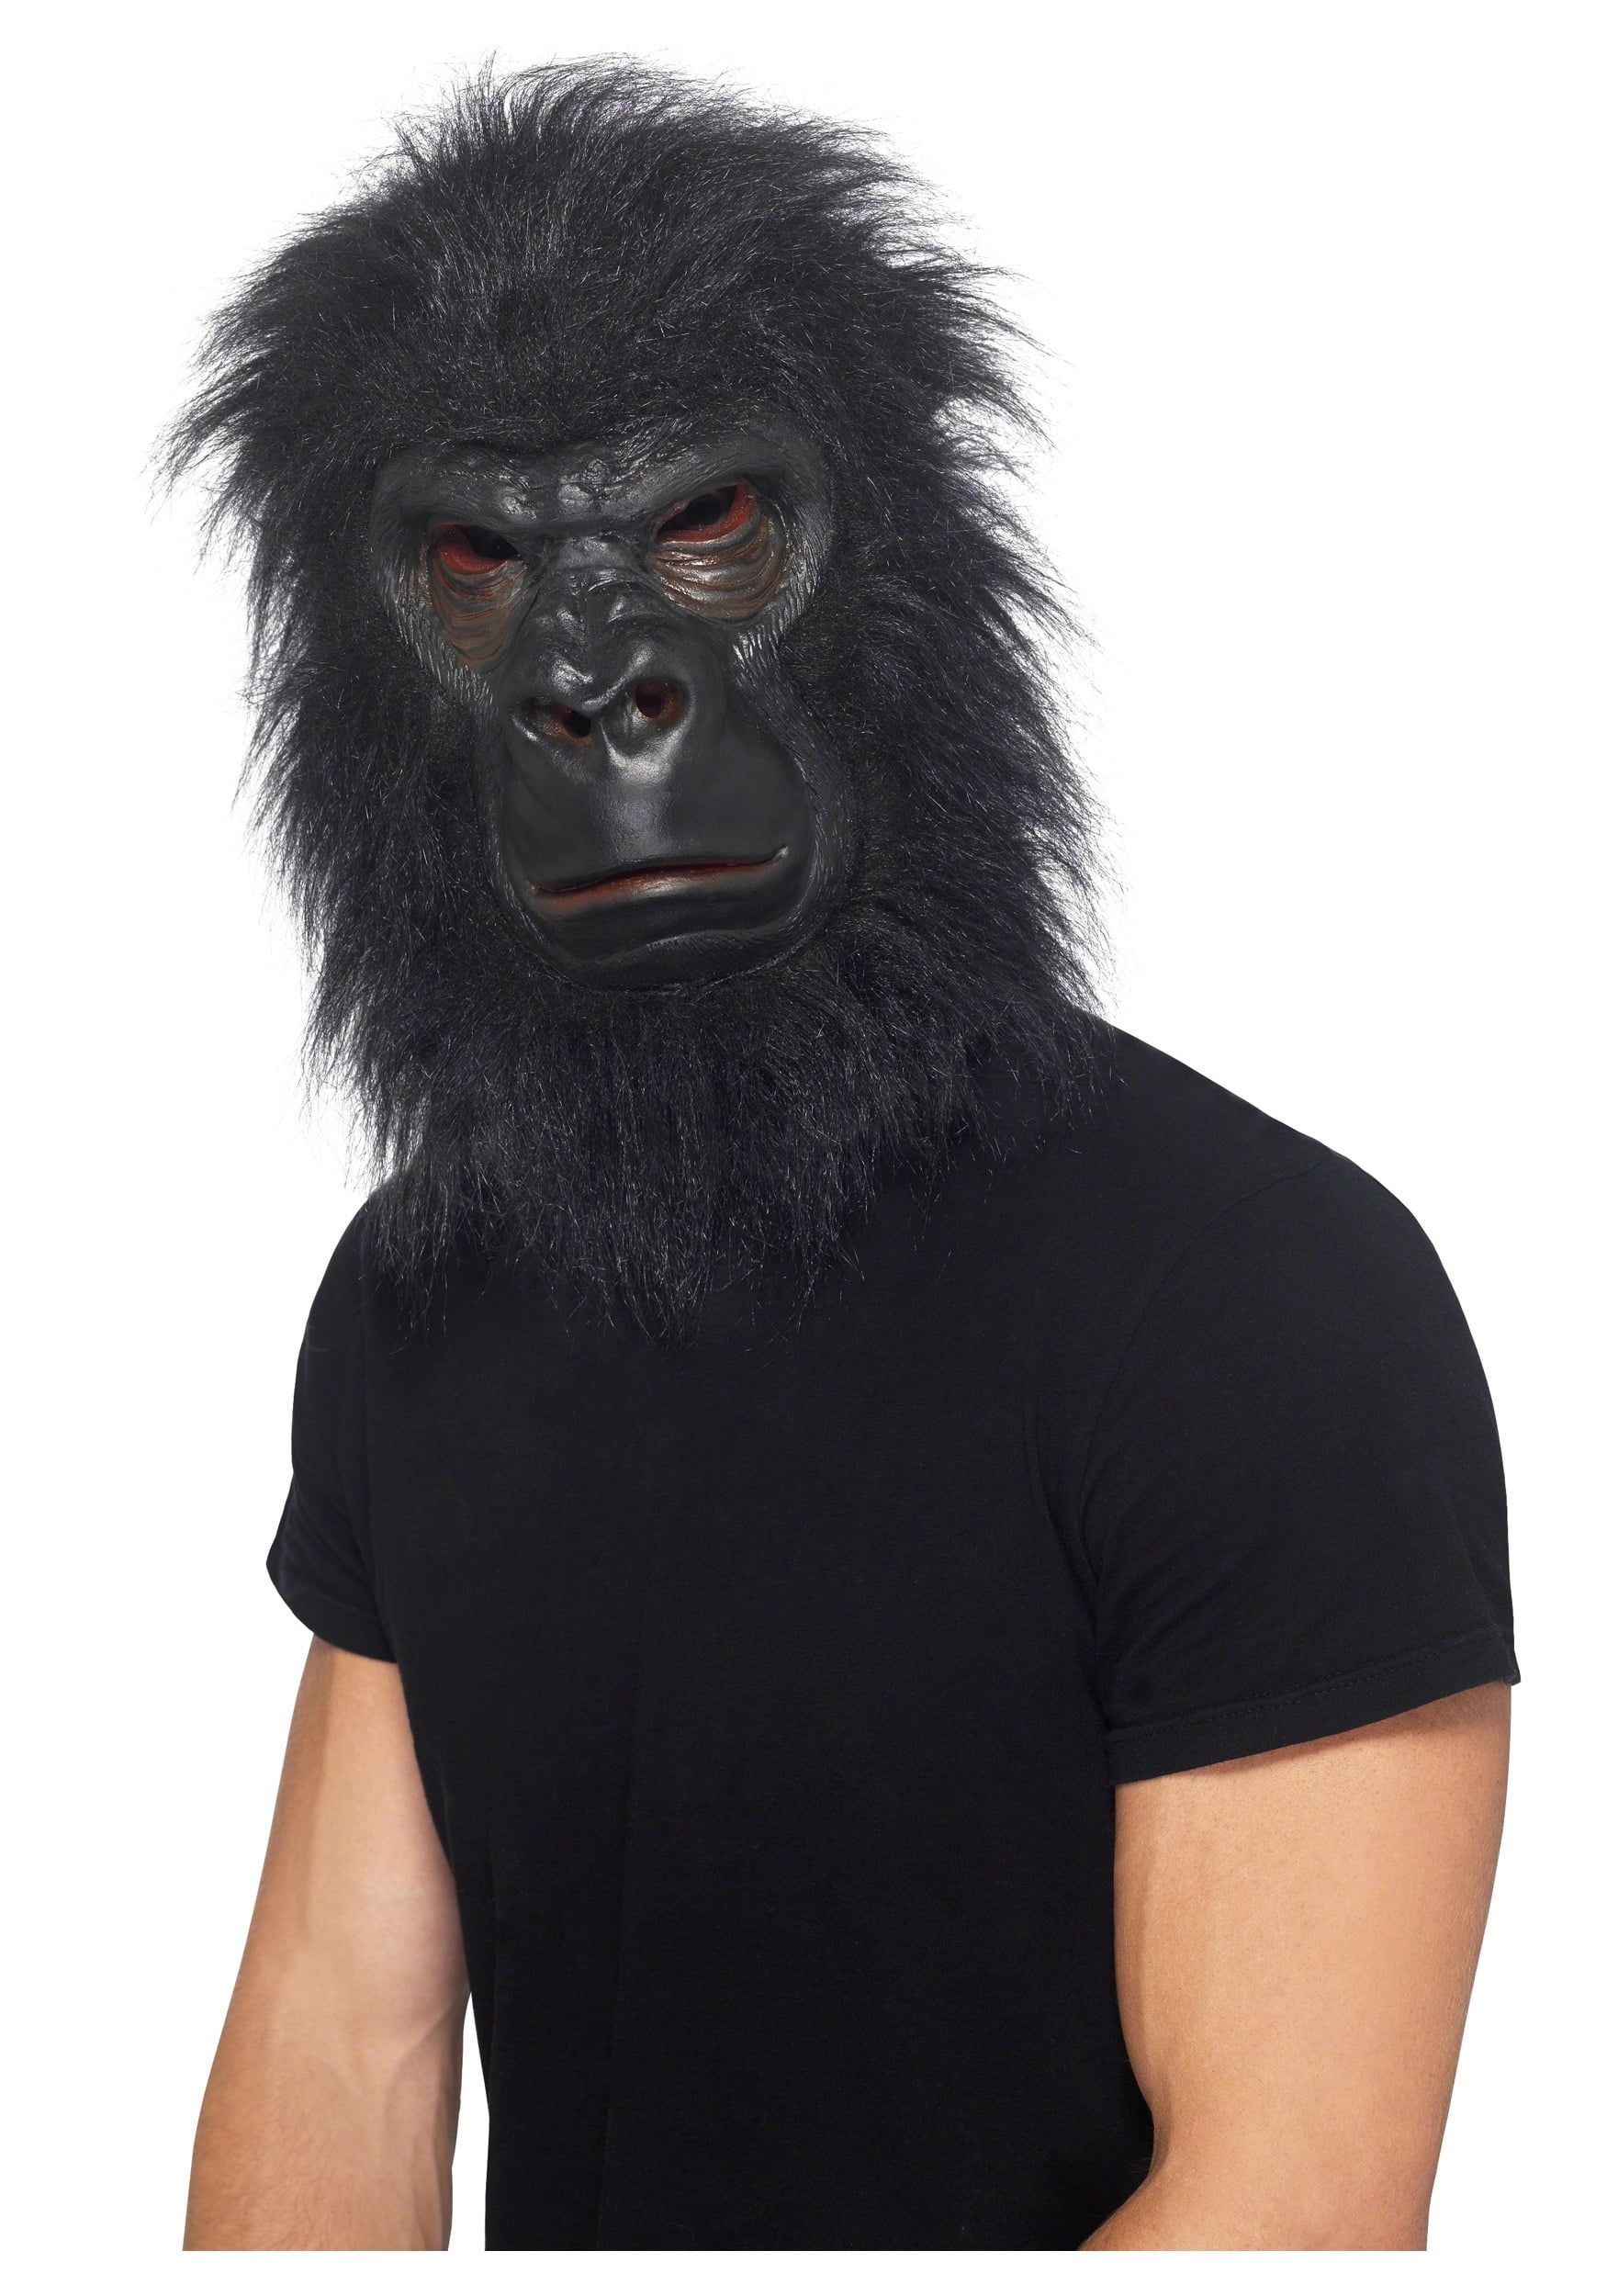 Gorilla - Walmart.com